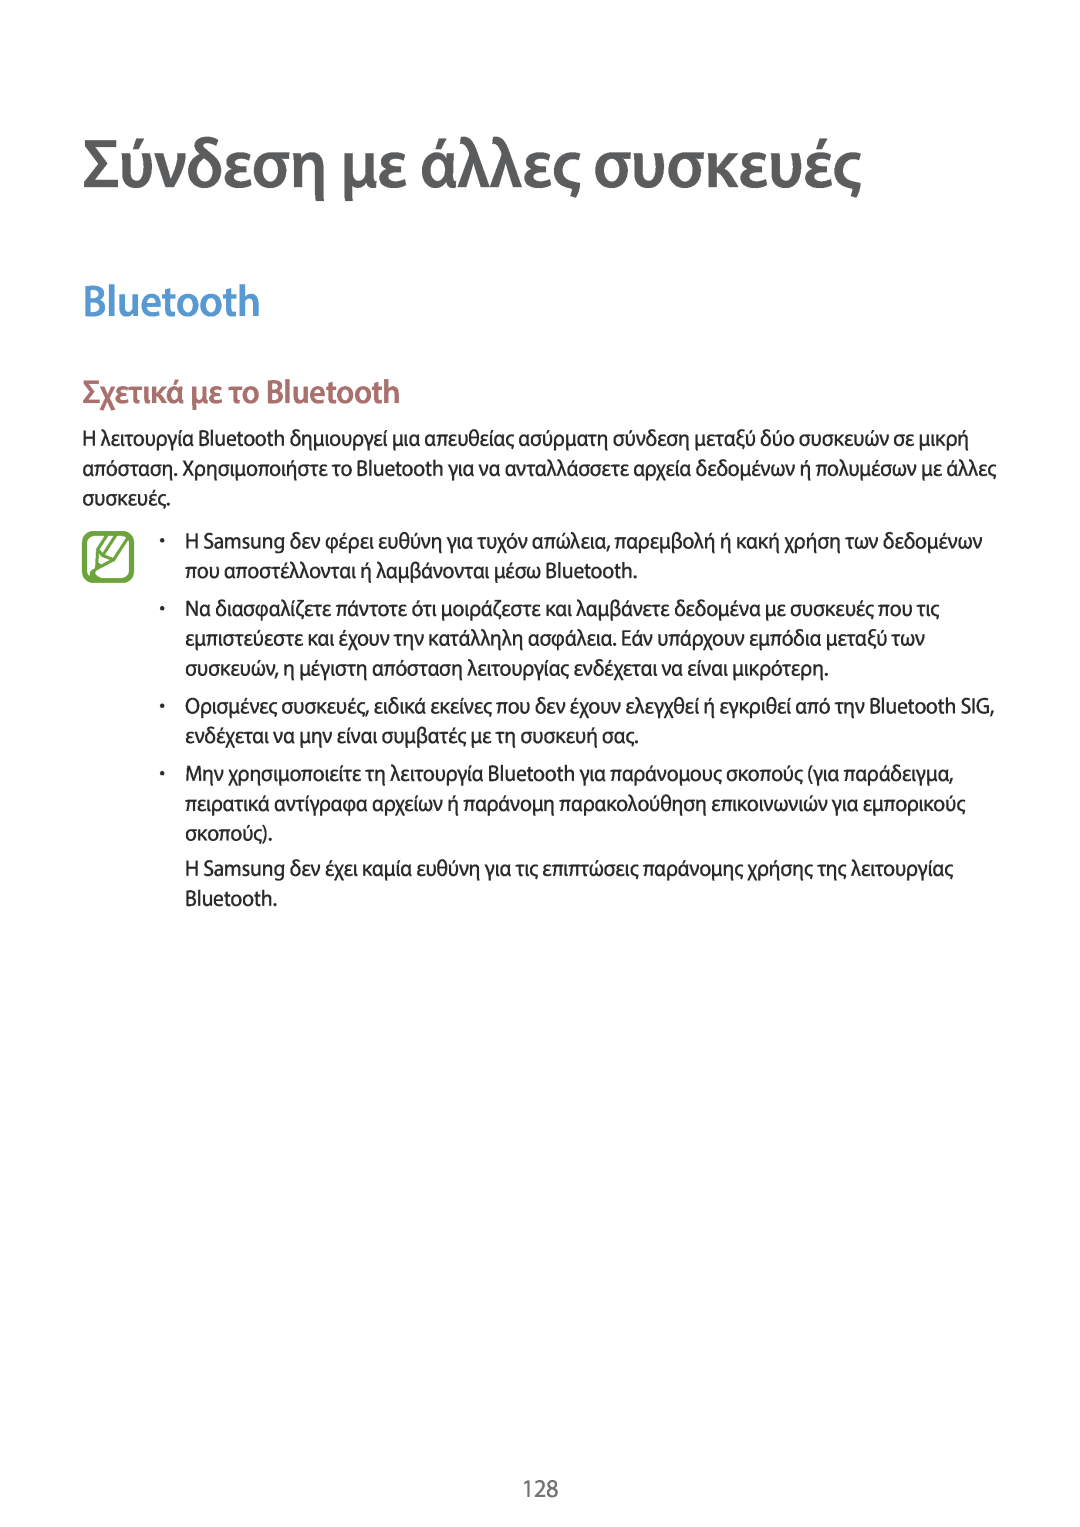 Samsung SM-T805NTSAEUR, SM-T805NZWAEUR manual Σύνδεση με άλλες συσκευές, Σχετικά με το Bluetooth 